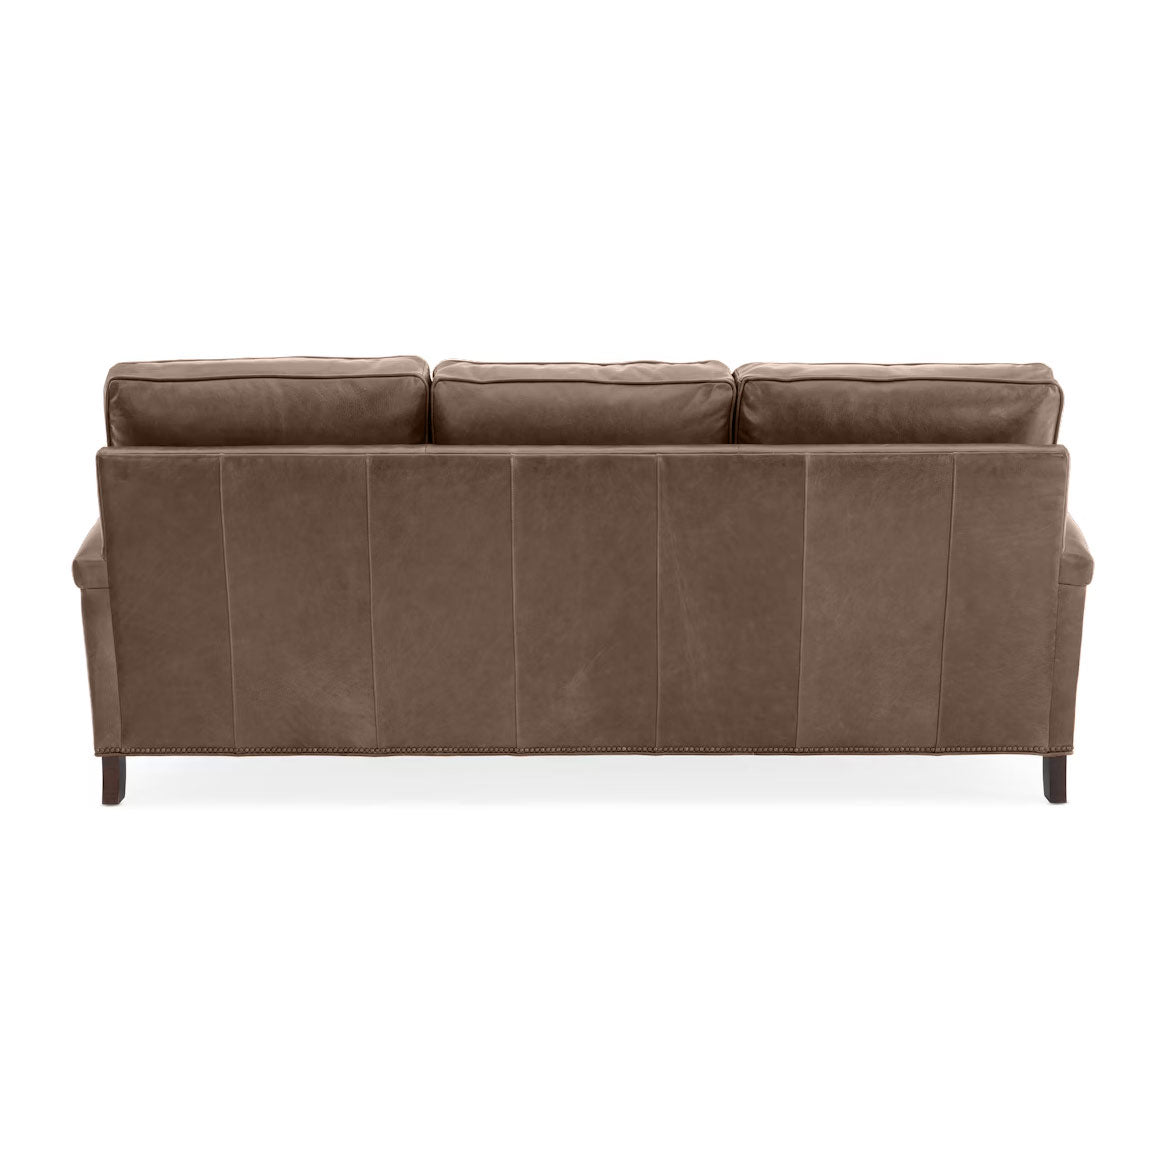 Mallory Leather Sofa